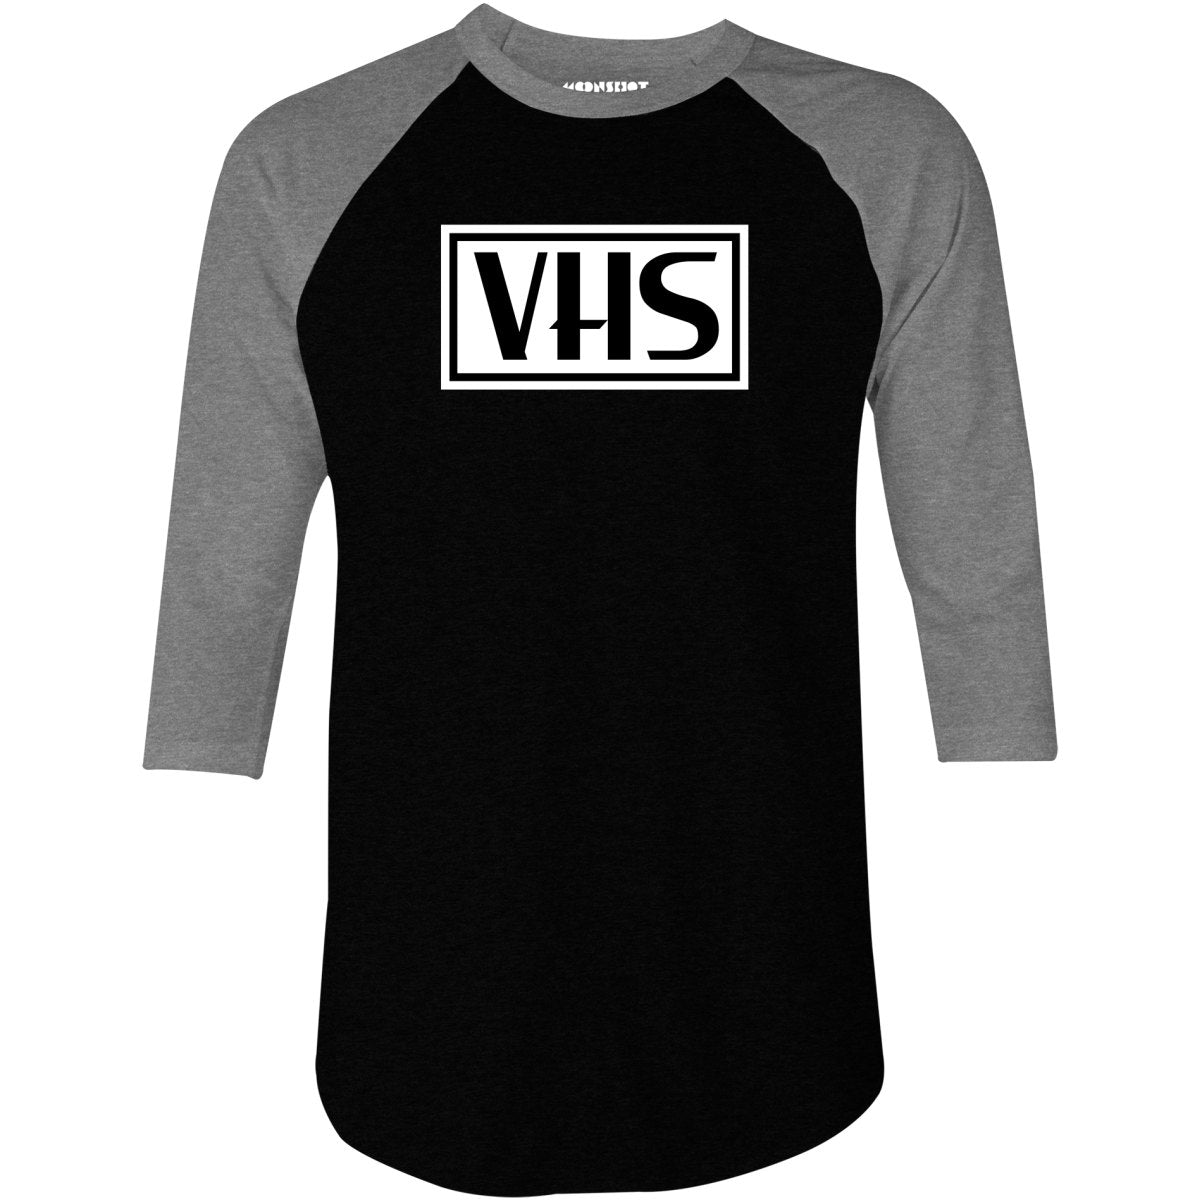 VHS - 3/4 Sleeve Raglan T-Shirt